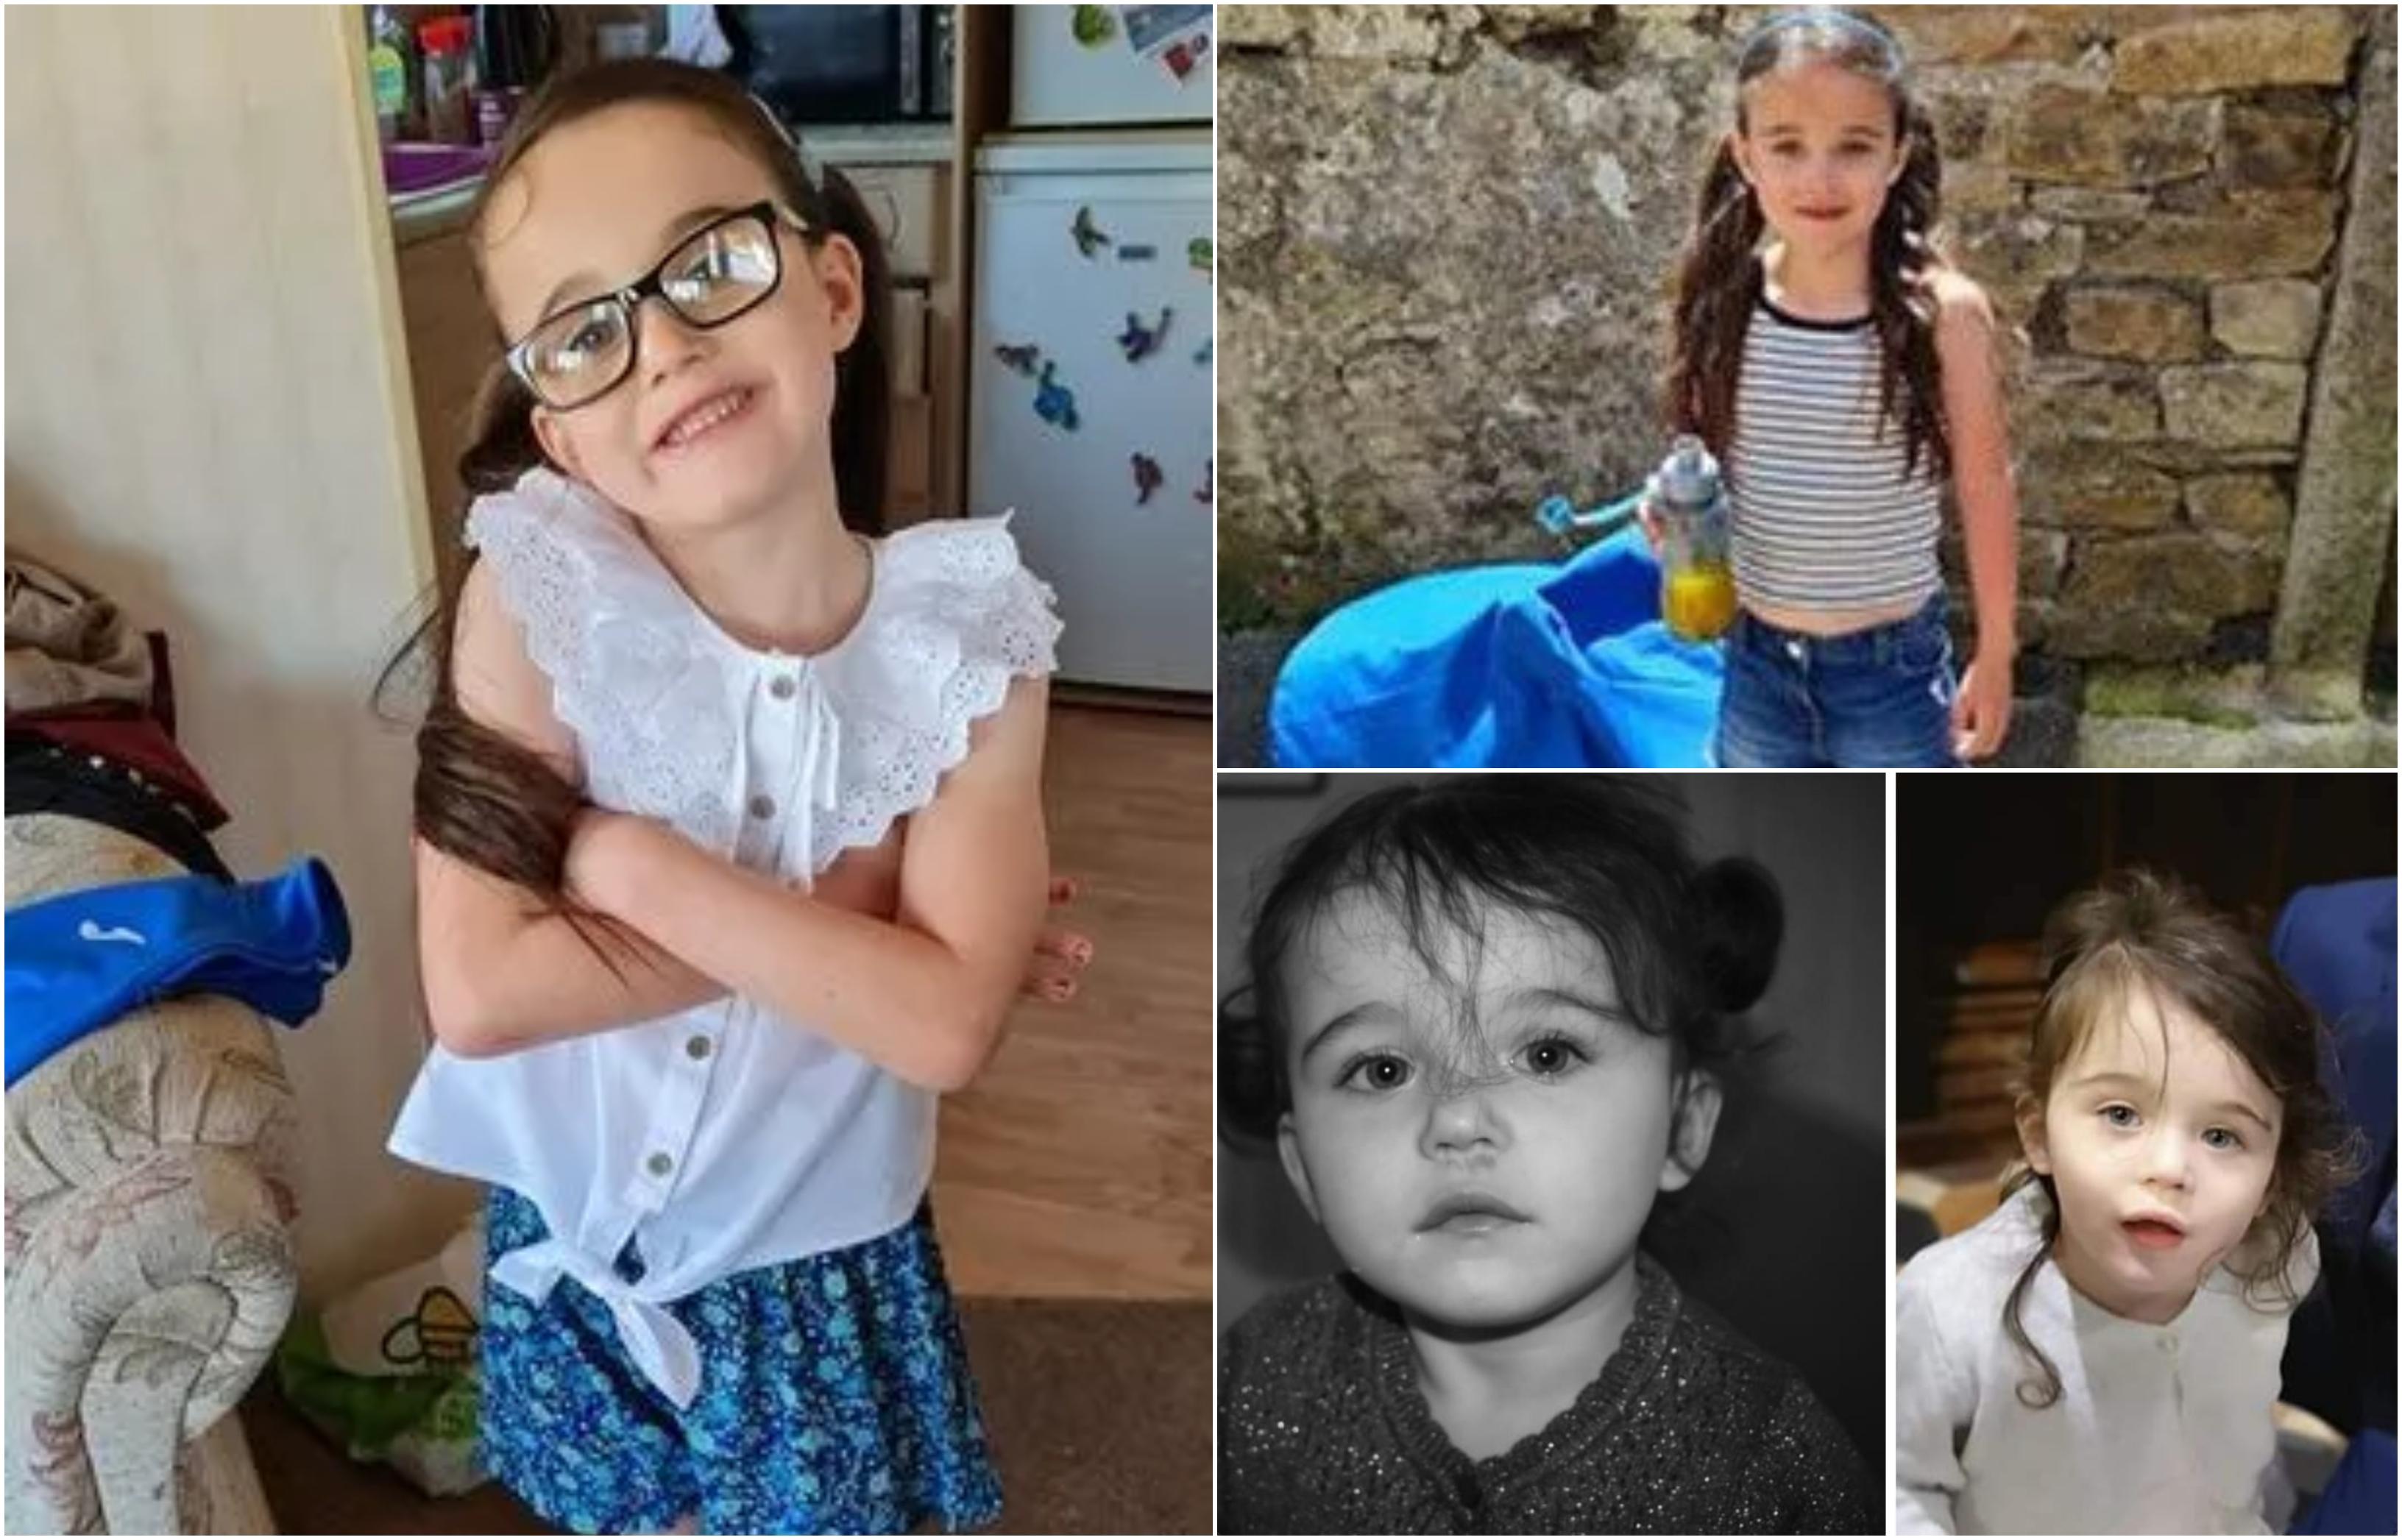 "Sperăm că zbori cu îngerii în pace". O fetiţă de 6 ani şi-a dat ultima suflare sub privire prietenilor, după ce a fost spulberată de o dubiţă pe trotuar, în UK